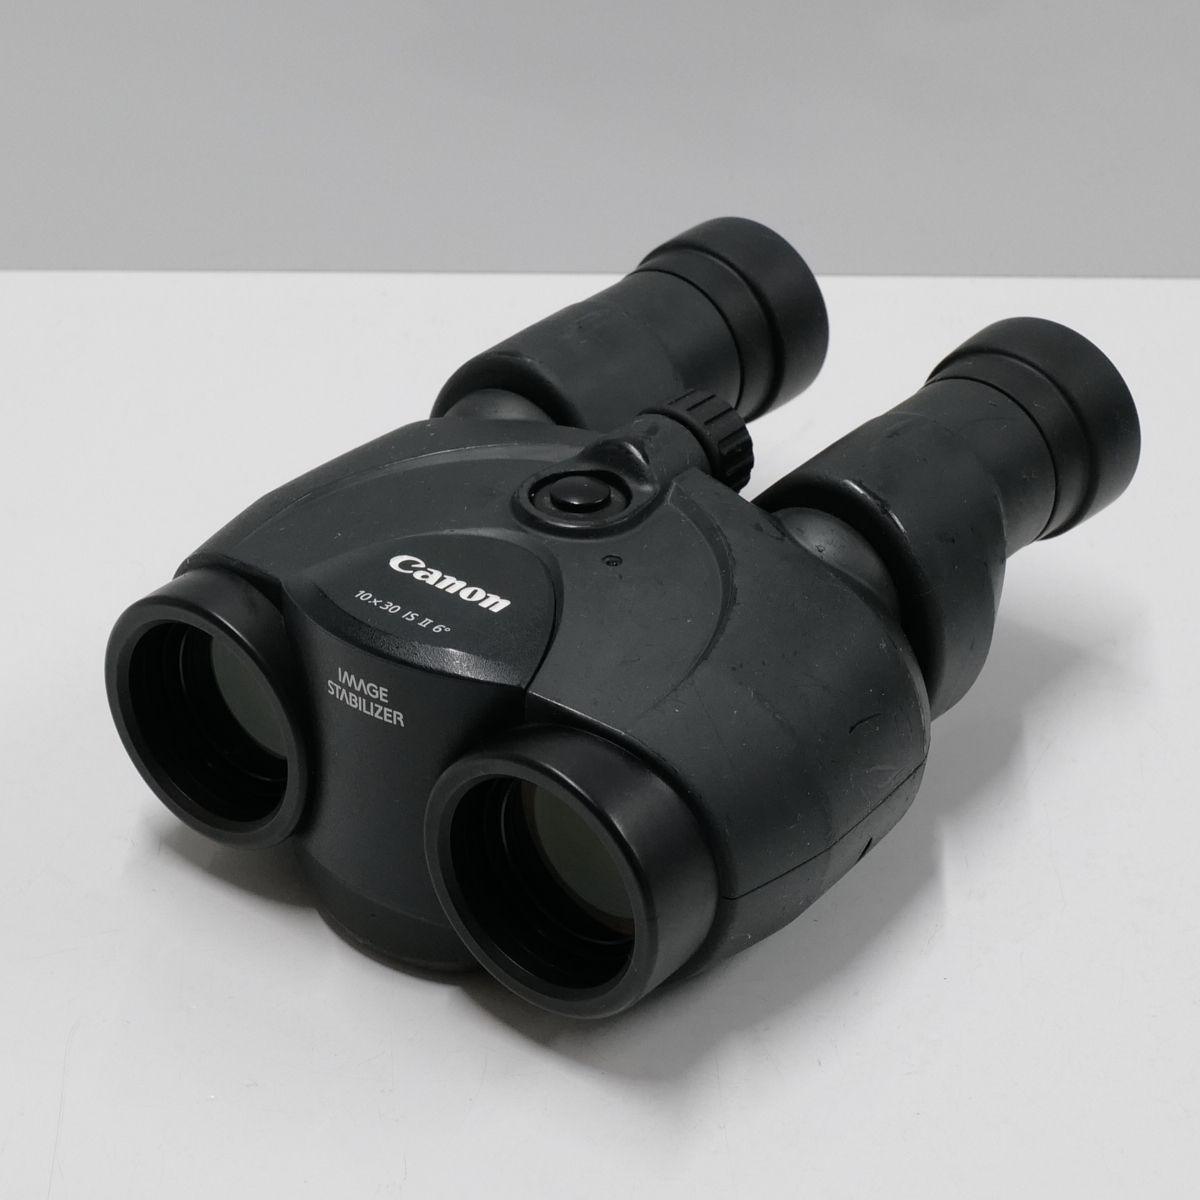 CANON 10×30 IS II 双眼鏡 USED品 10倍 ポロプリズム 防振 光学式手